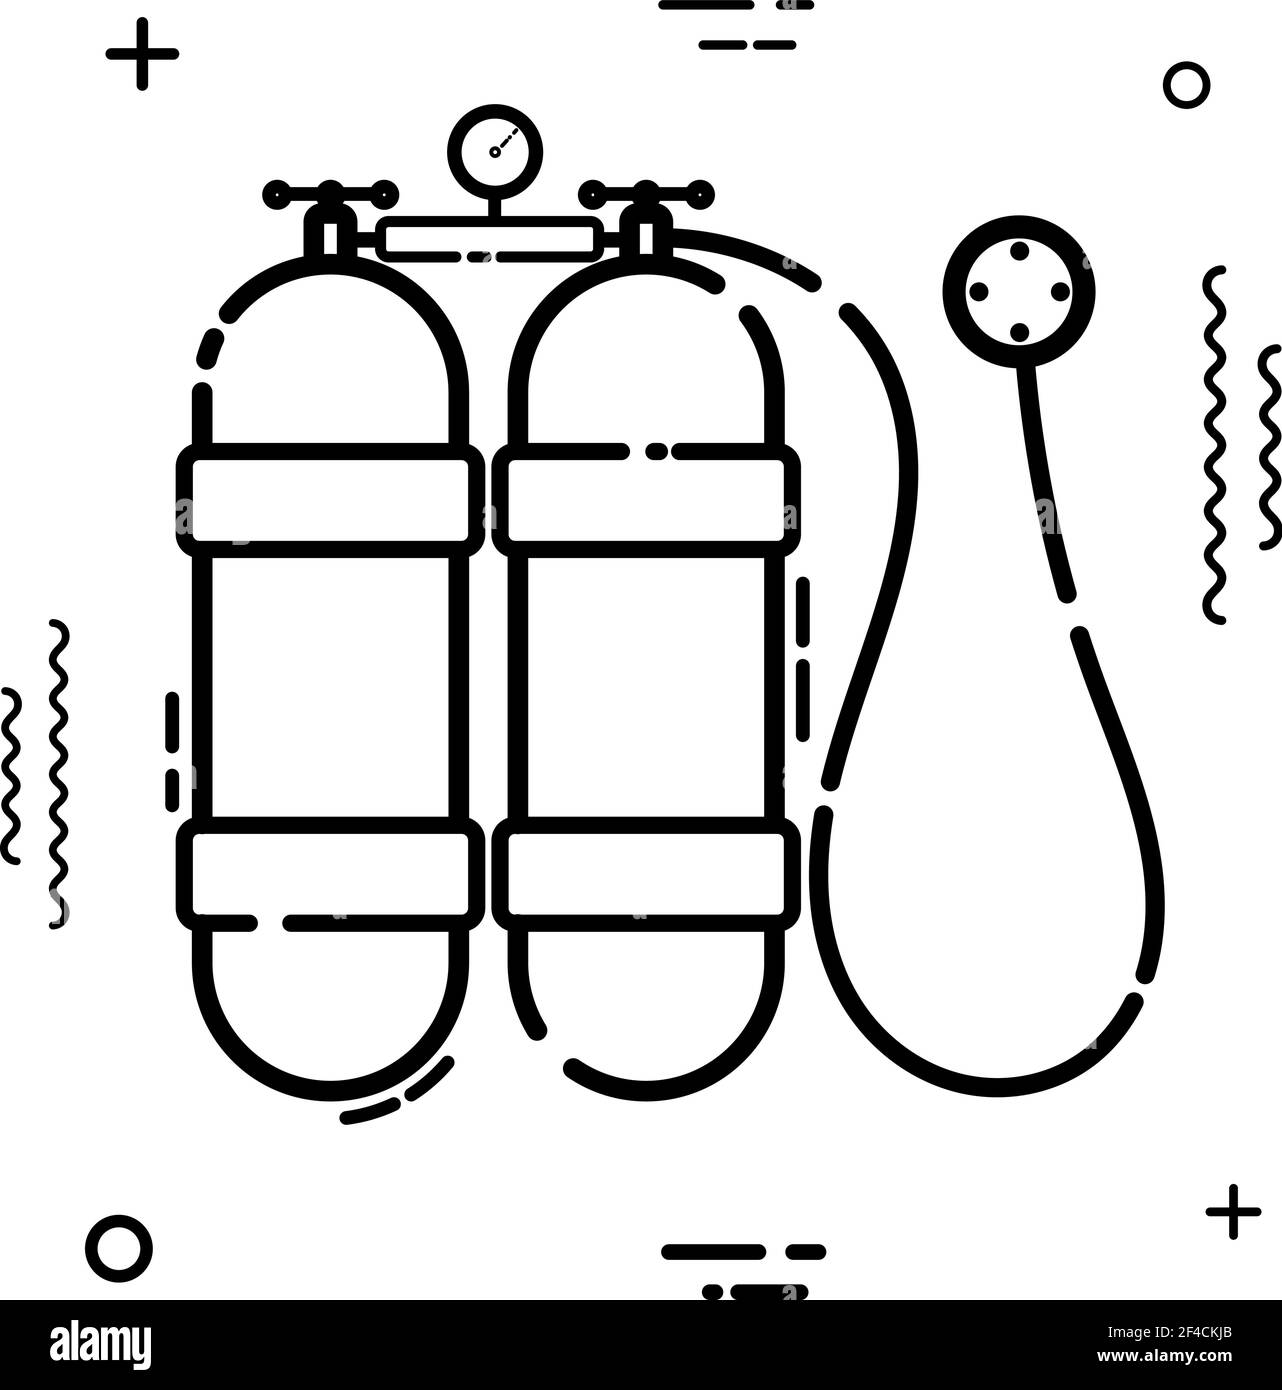 Einfaches schwarzes lineares Scuba-Symbol auf weißem Hintergrund. Symbol für Tauchen und Sommerferien. Vektorgrafik Stock Vektor